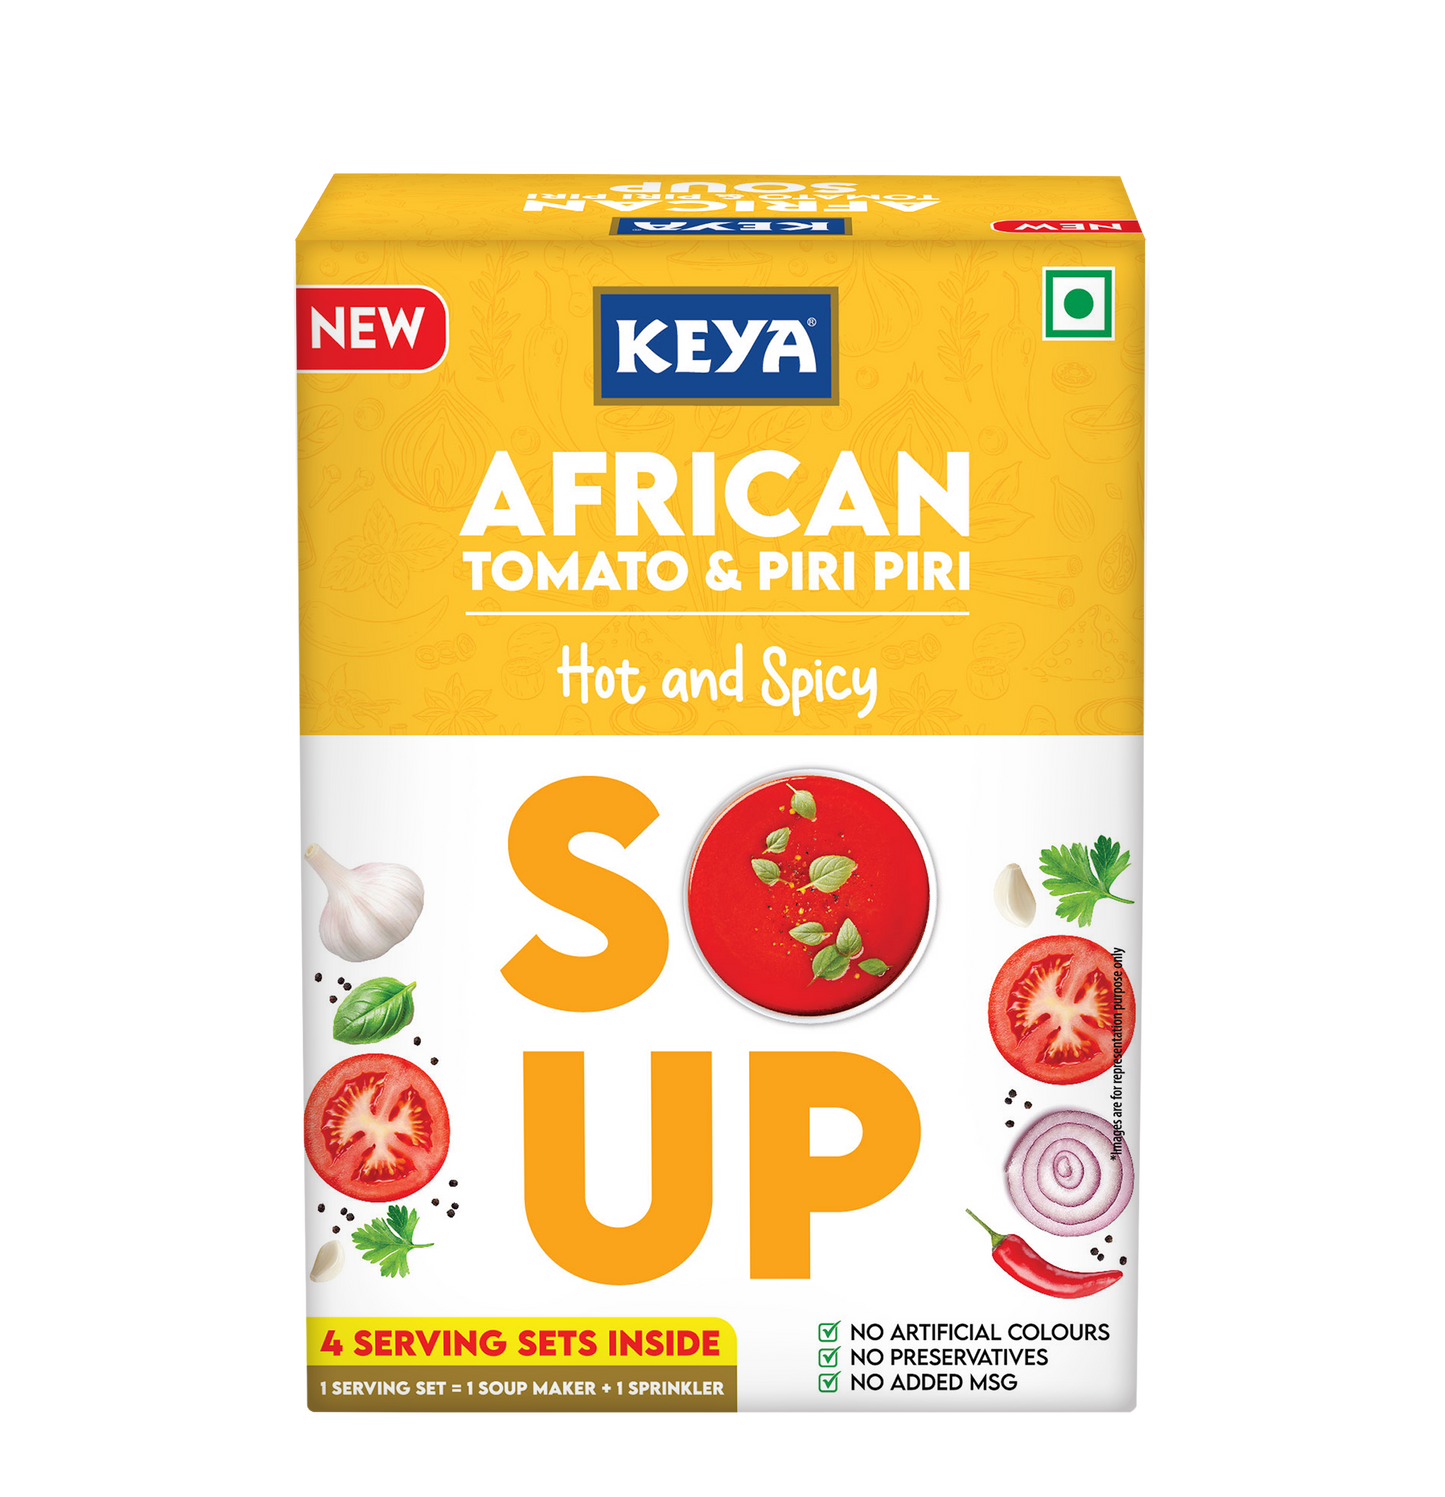 Keya Italian Soup Cream & Herbs 44g| Keya African Soup-Tomato & Piripiri 56g, Pack of 2